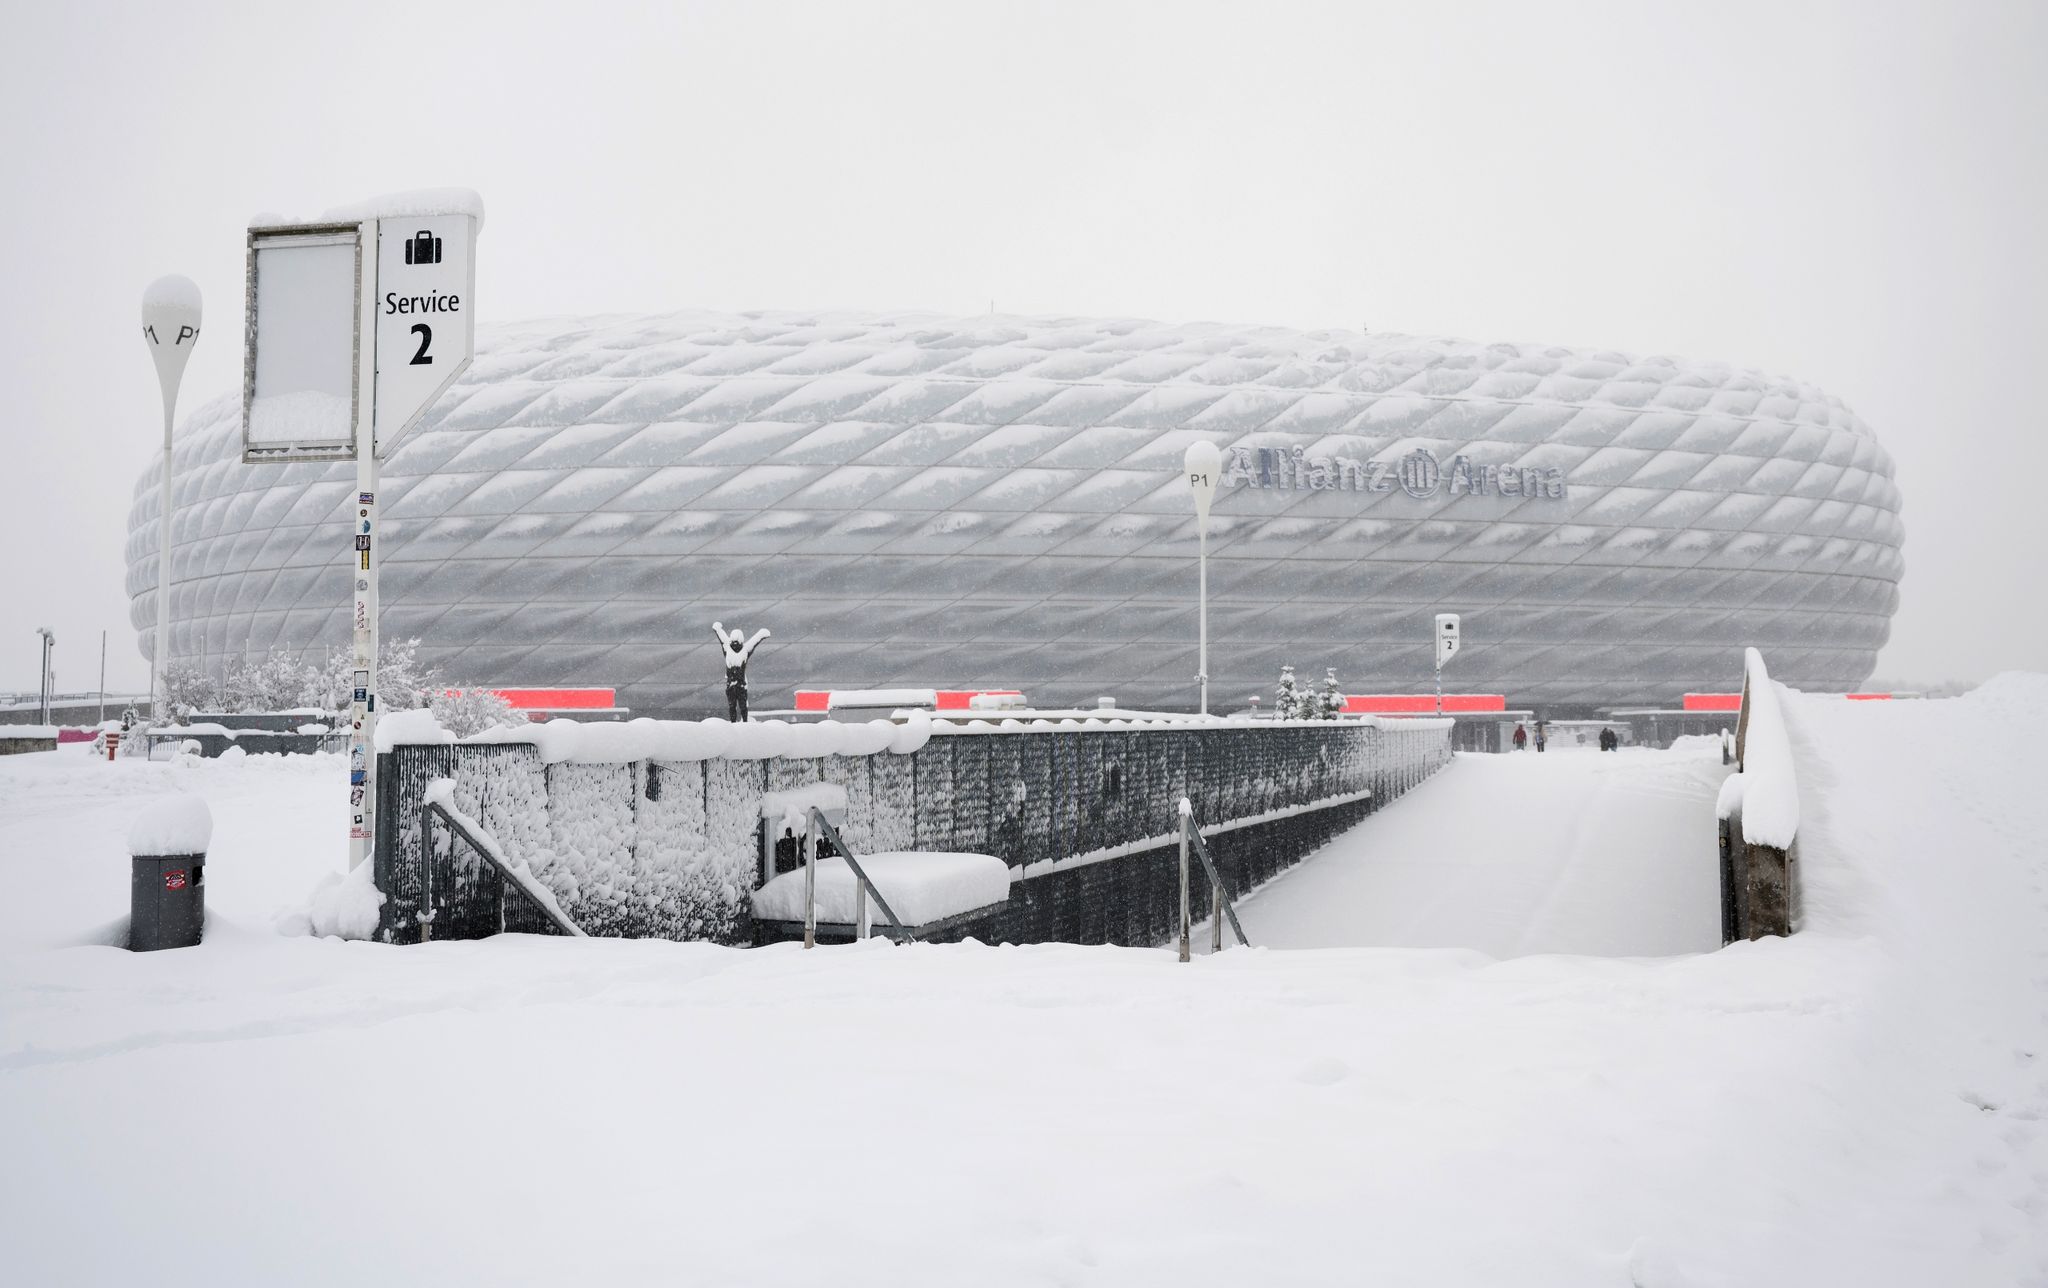 Das Spiel zwischen dem FC Bayern München und dem 1. FC Union Berlin wurde aufgrund der Wetterlage abgesagt.